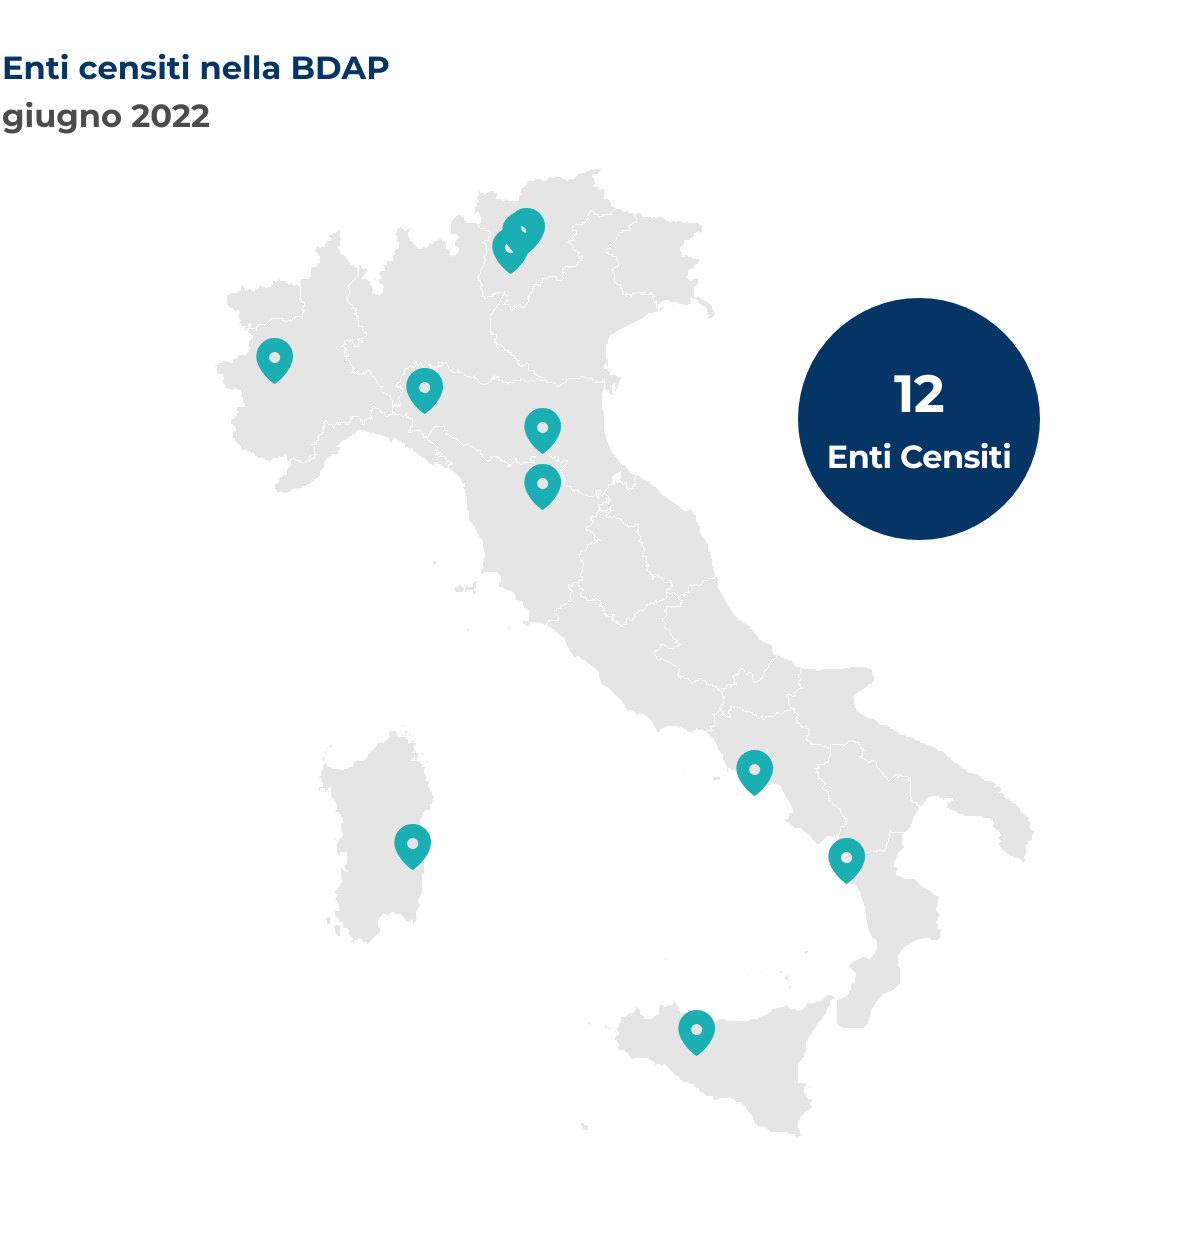 Mappa dell’Italia che mostra la localizzazione per Comune degli enti censiti nella BDAP nel mese di giugno 2022.